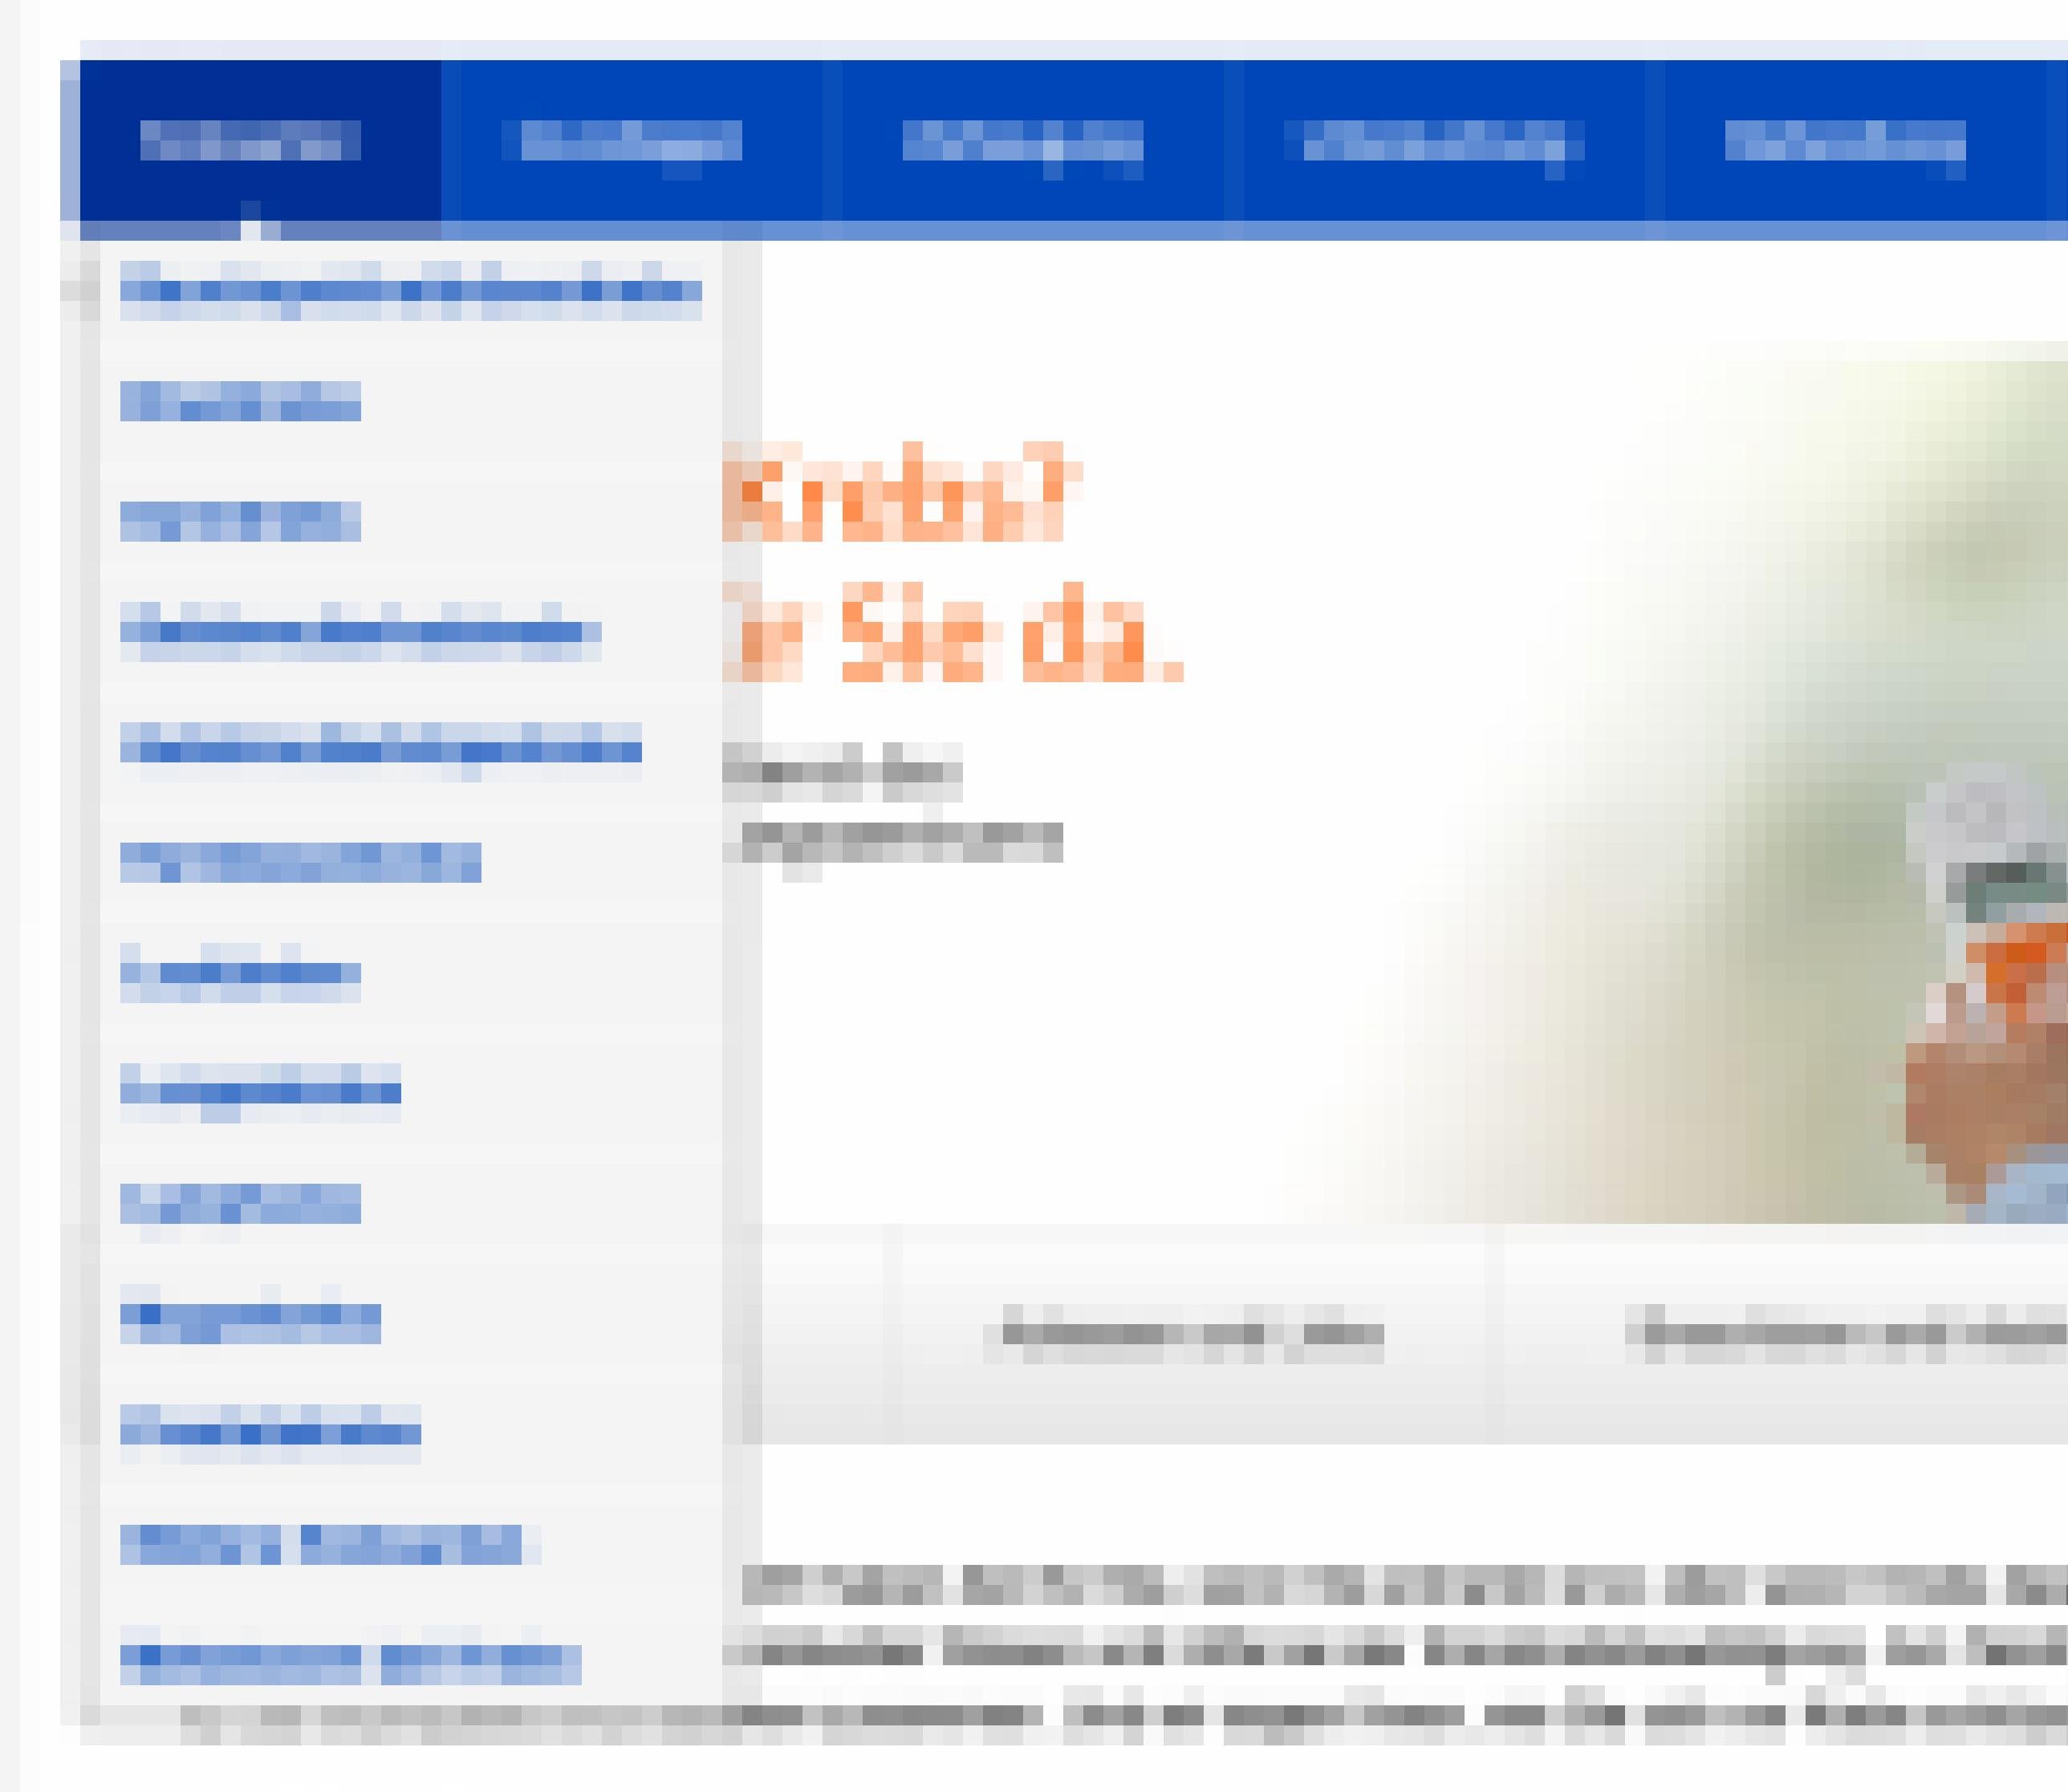 Screenshot Navigationselemente www.krebsinformationsdienst.de. Zu sehen ist ein Drop-Down-Menü unter dem Navigationspunkt „Krebsarten“